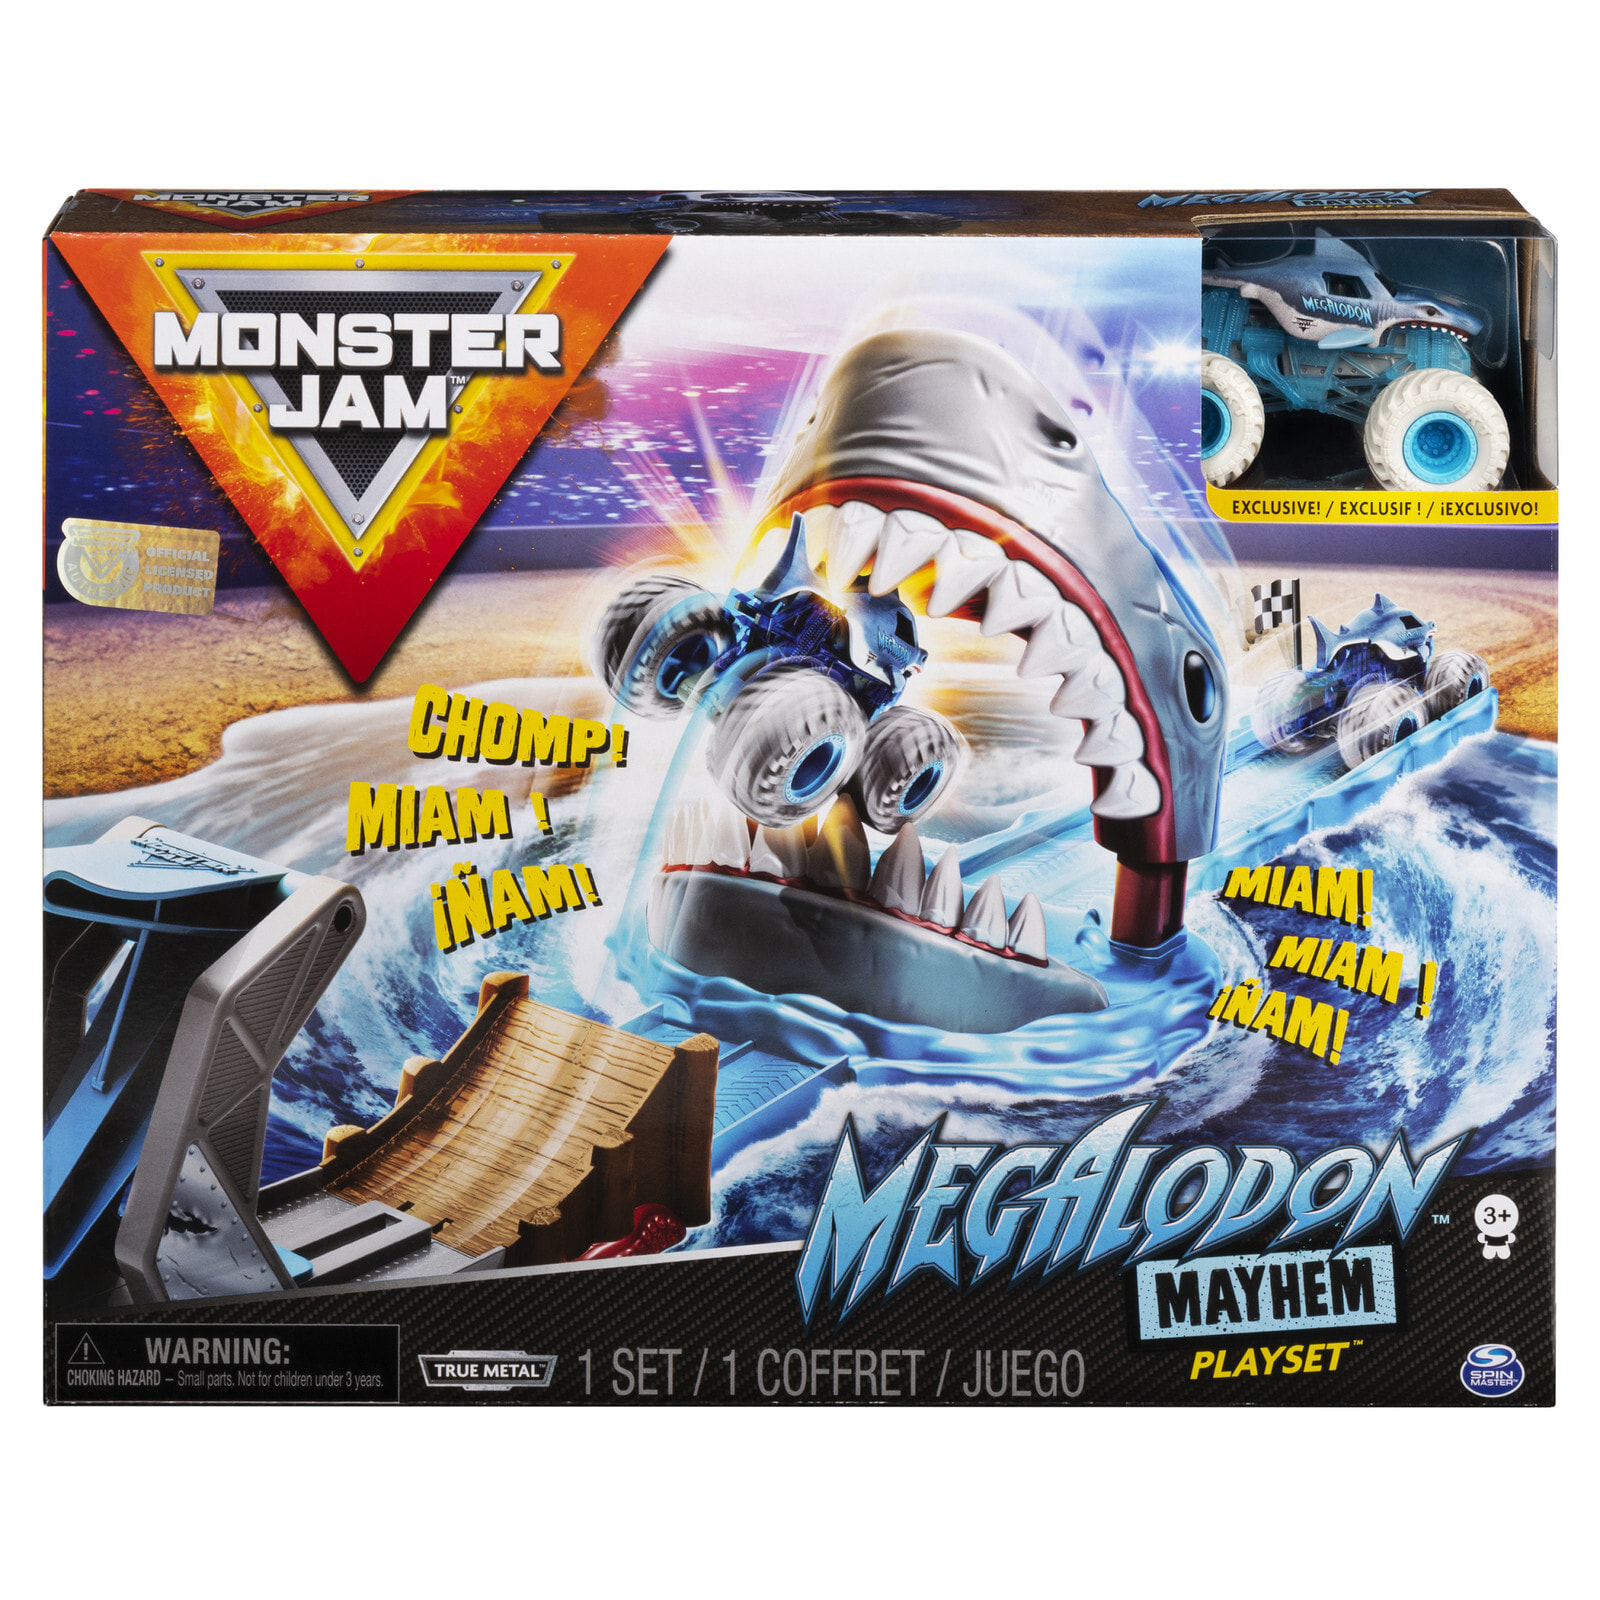 Monster Jam Megalodon Mayhem Playset 6056869